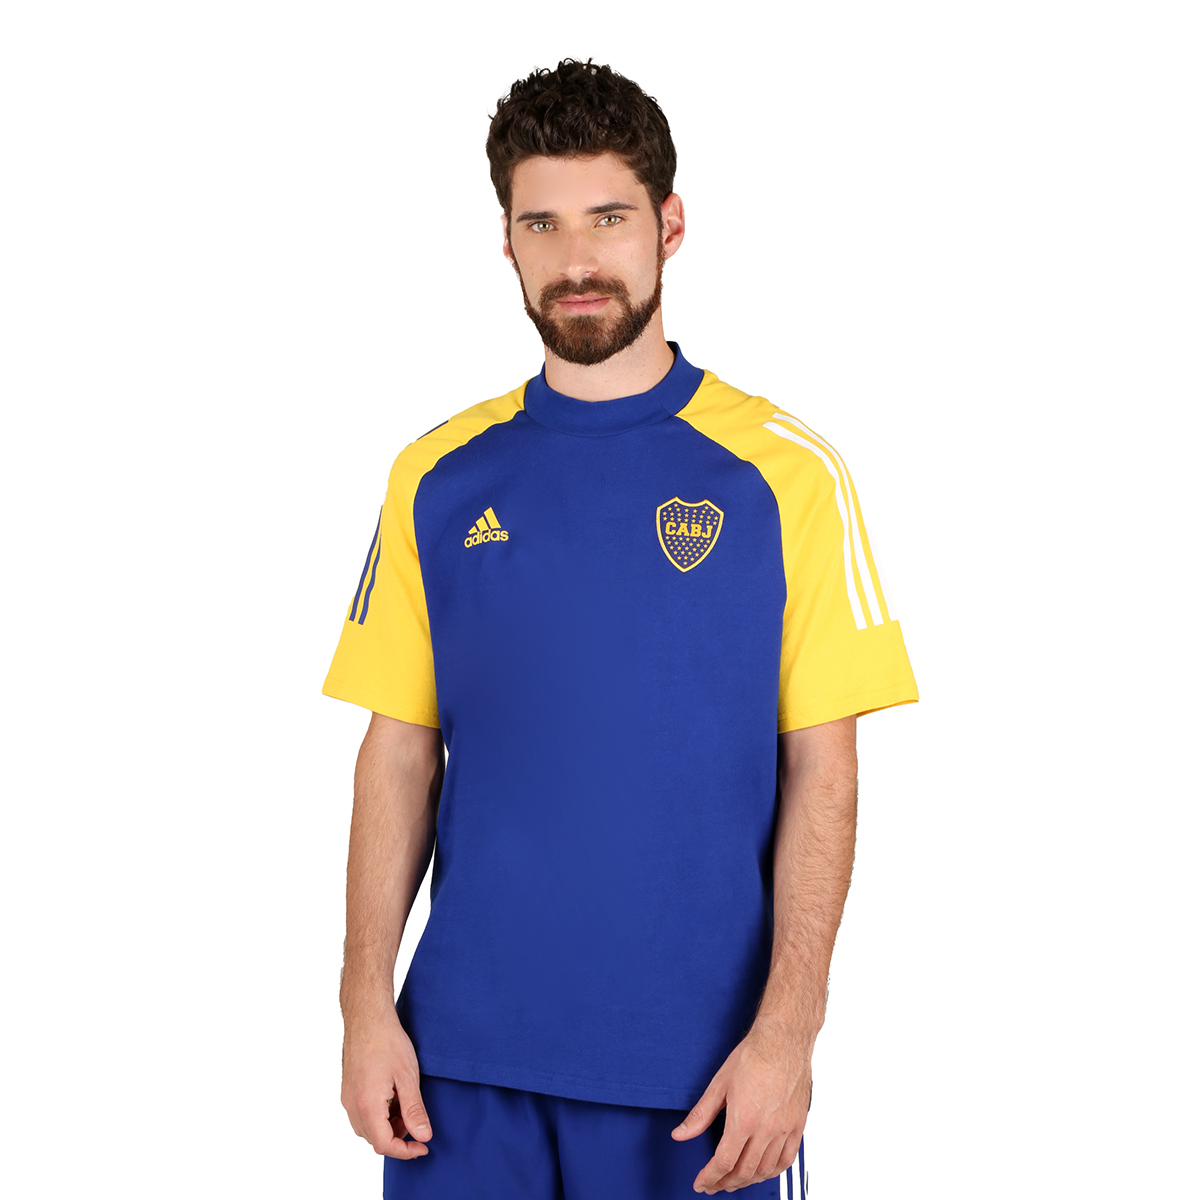 Remera adidas Boca Juniors,  image number null